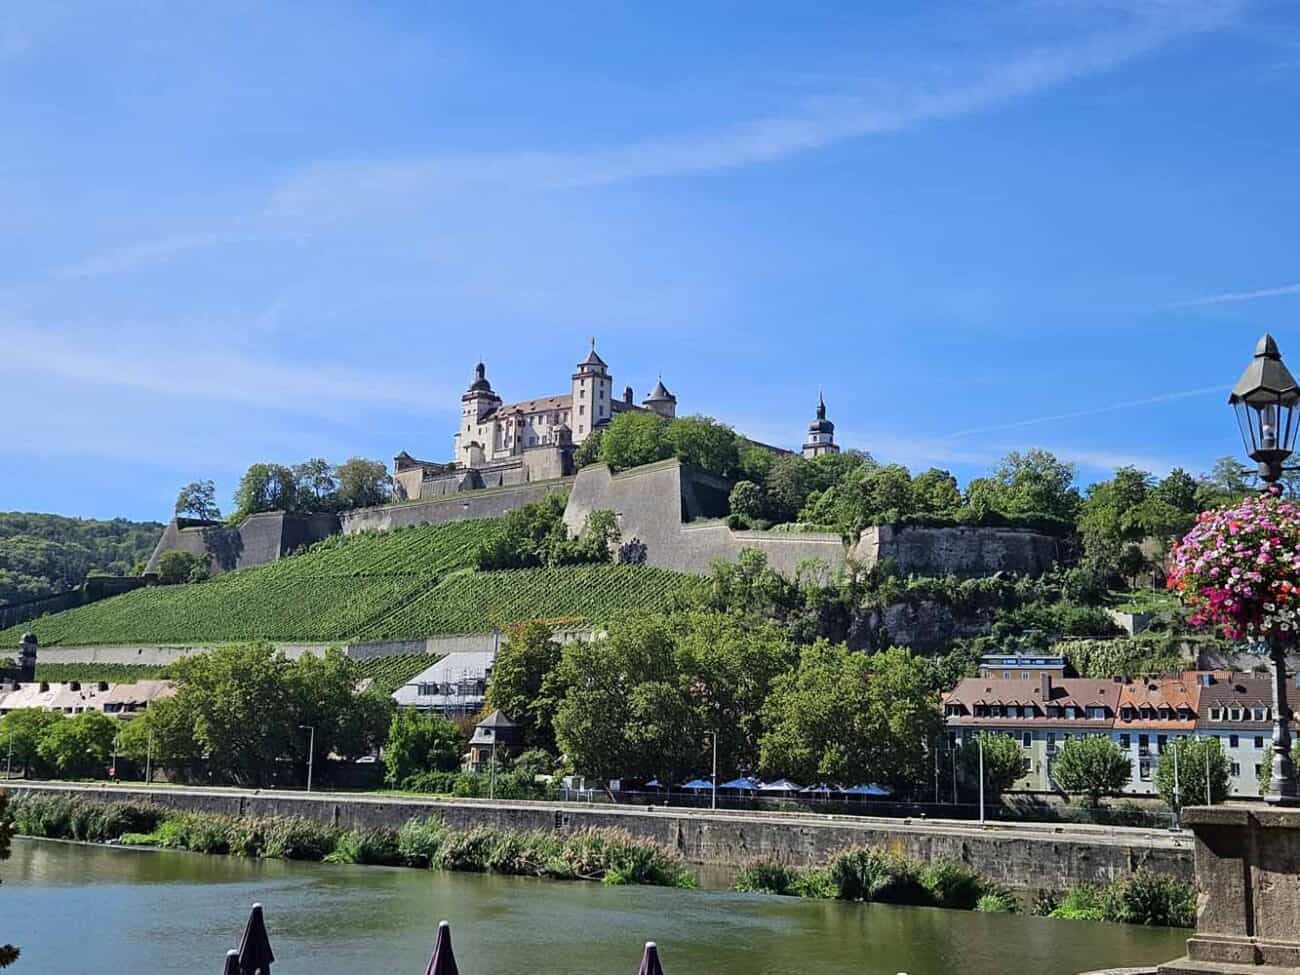 Festung Marienberg, eine wichtige der Würzburg Sehenswürdigkeiten